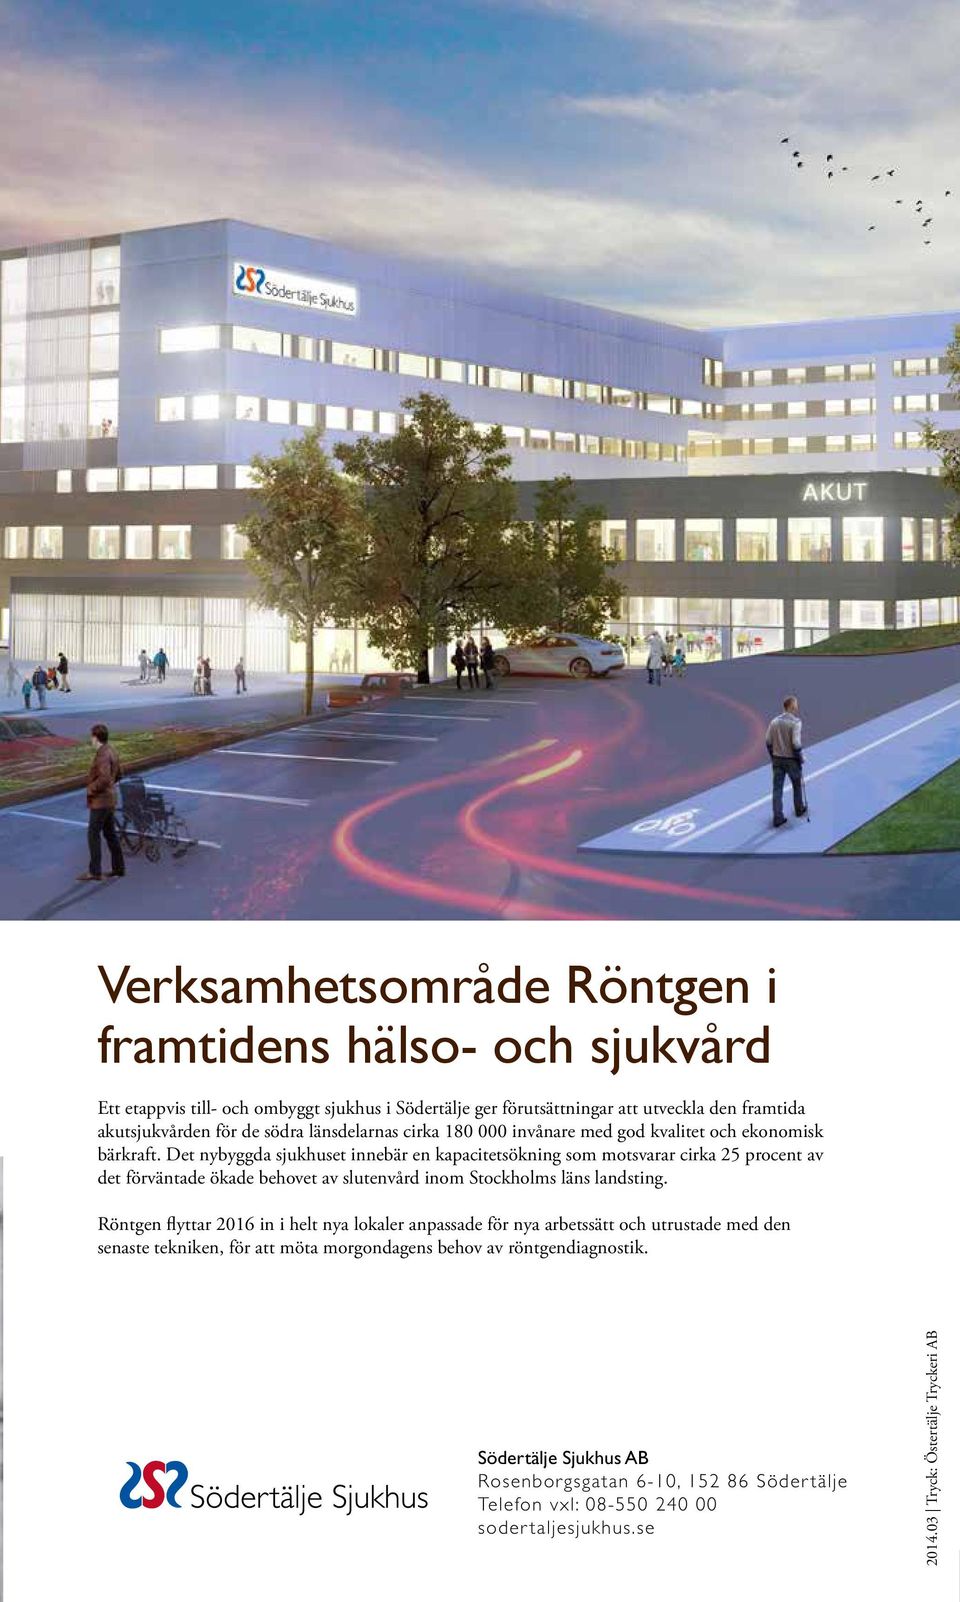 Det nybyggda sjukhuset innebär en kapacitetsökning som motsvarar cirka 25 procent av det förväntade ökade behovet av slutenvård inom Stockholms läns landsting.